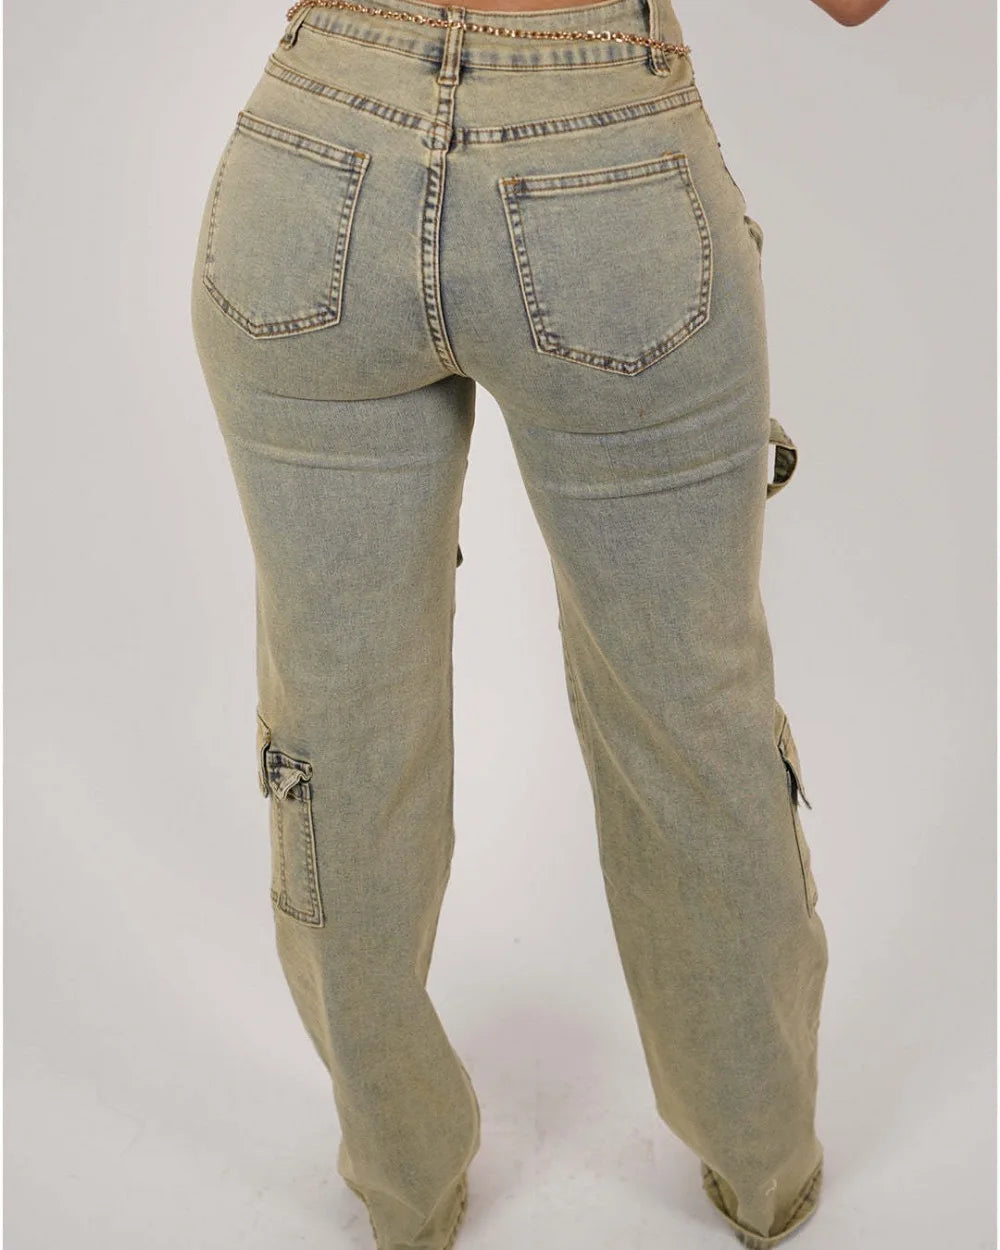 FZ Women's Retro Denim High Waisted Button Zipper Pants